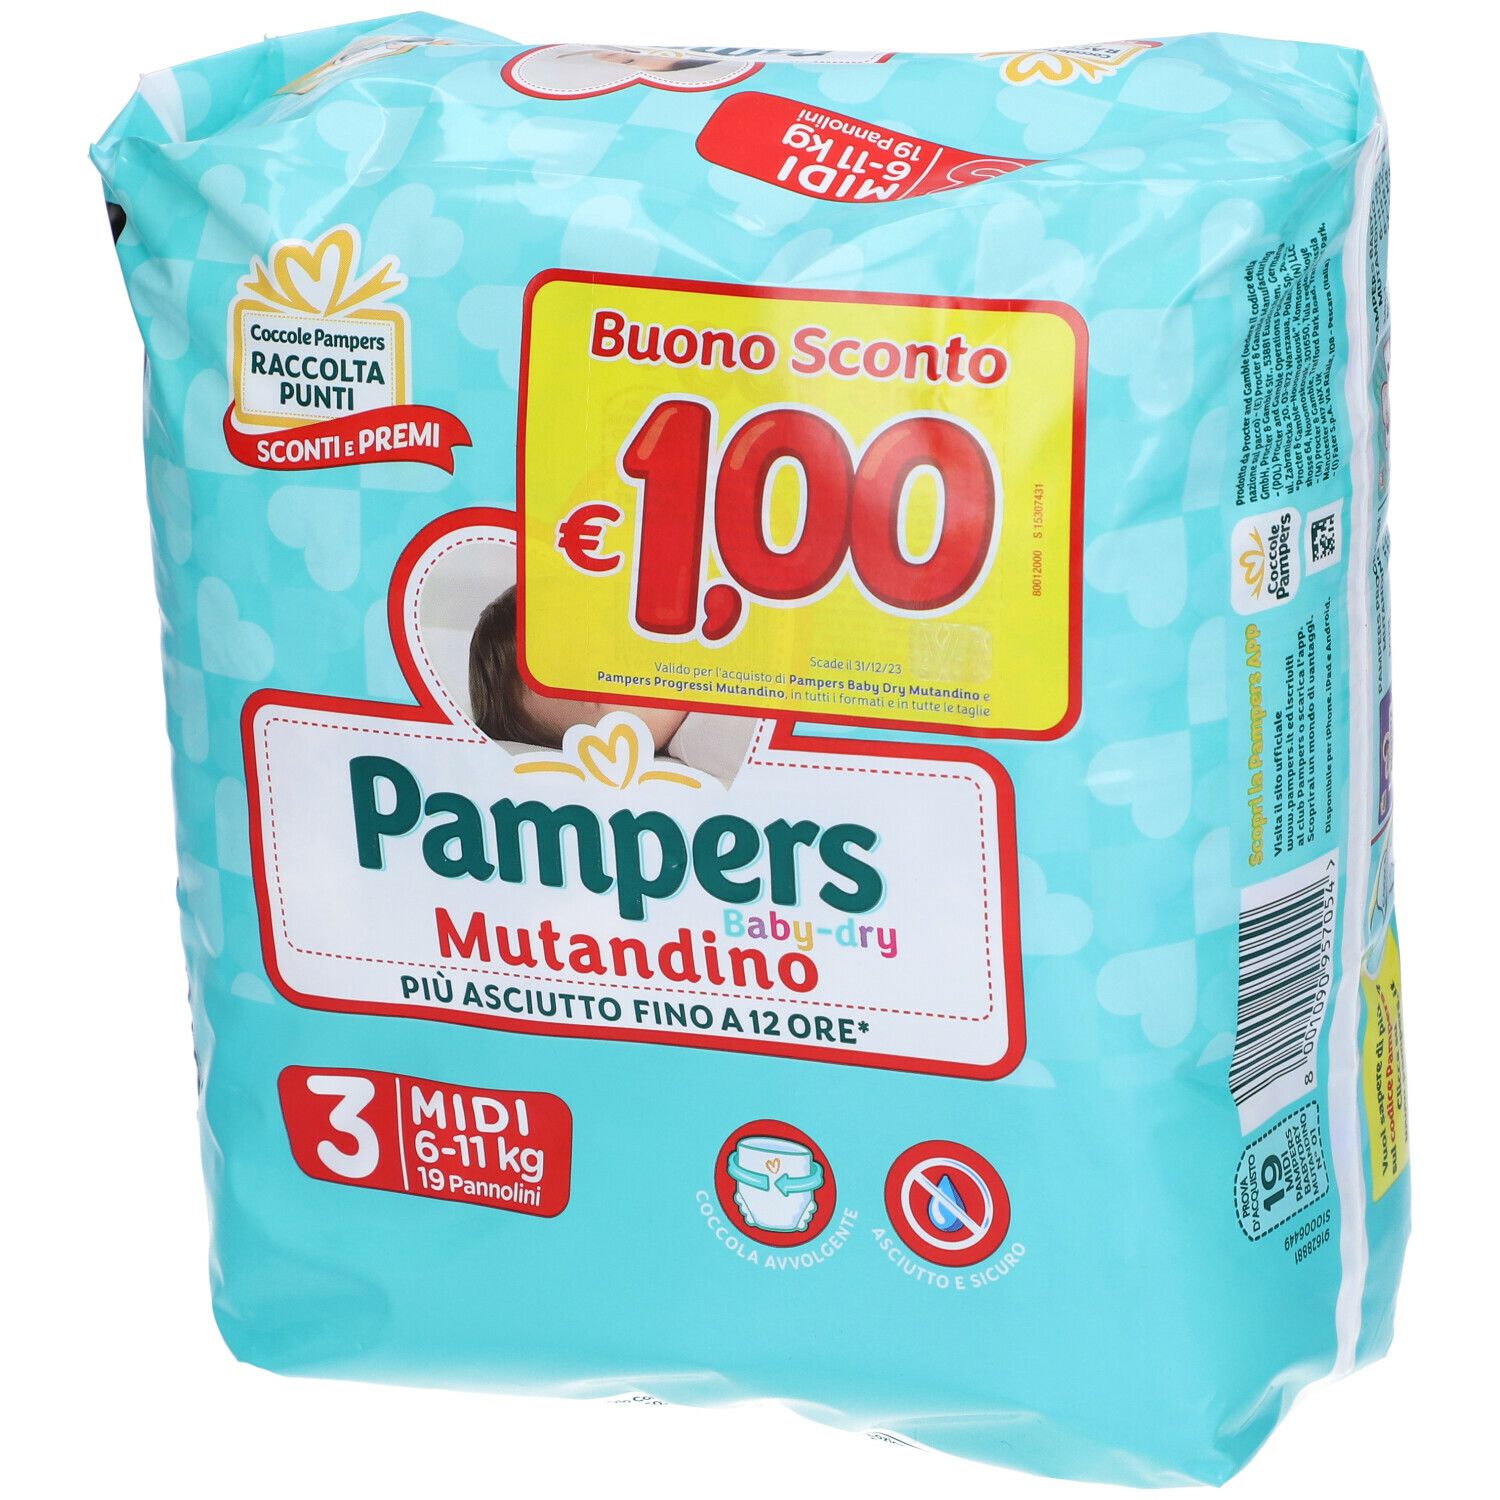 Image of Pampers Baby Dry Mutandino 3 Midi